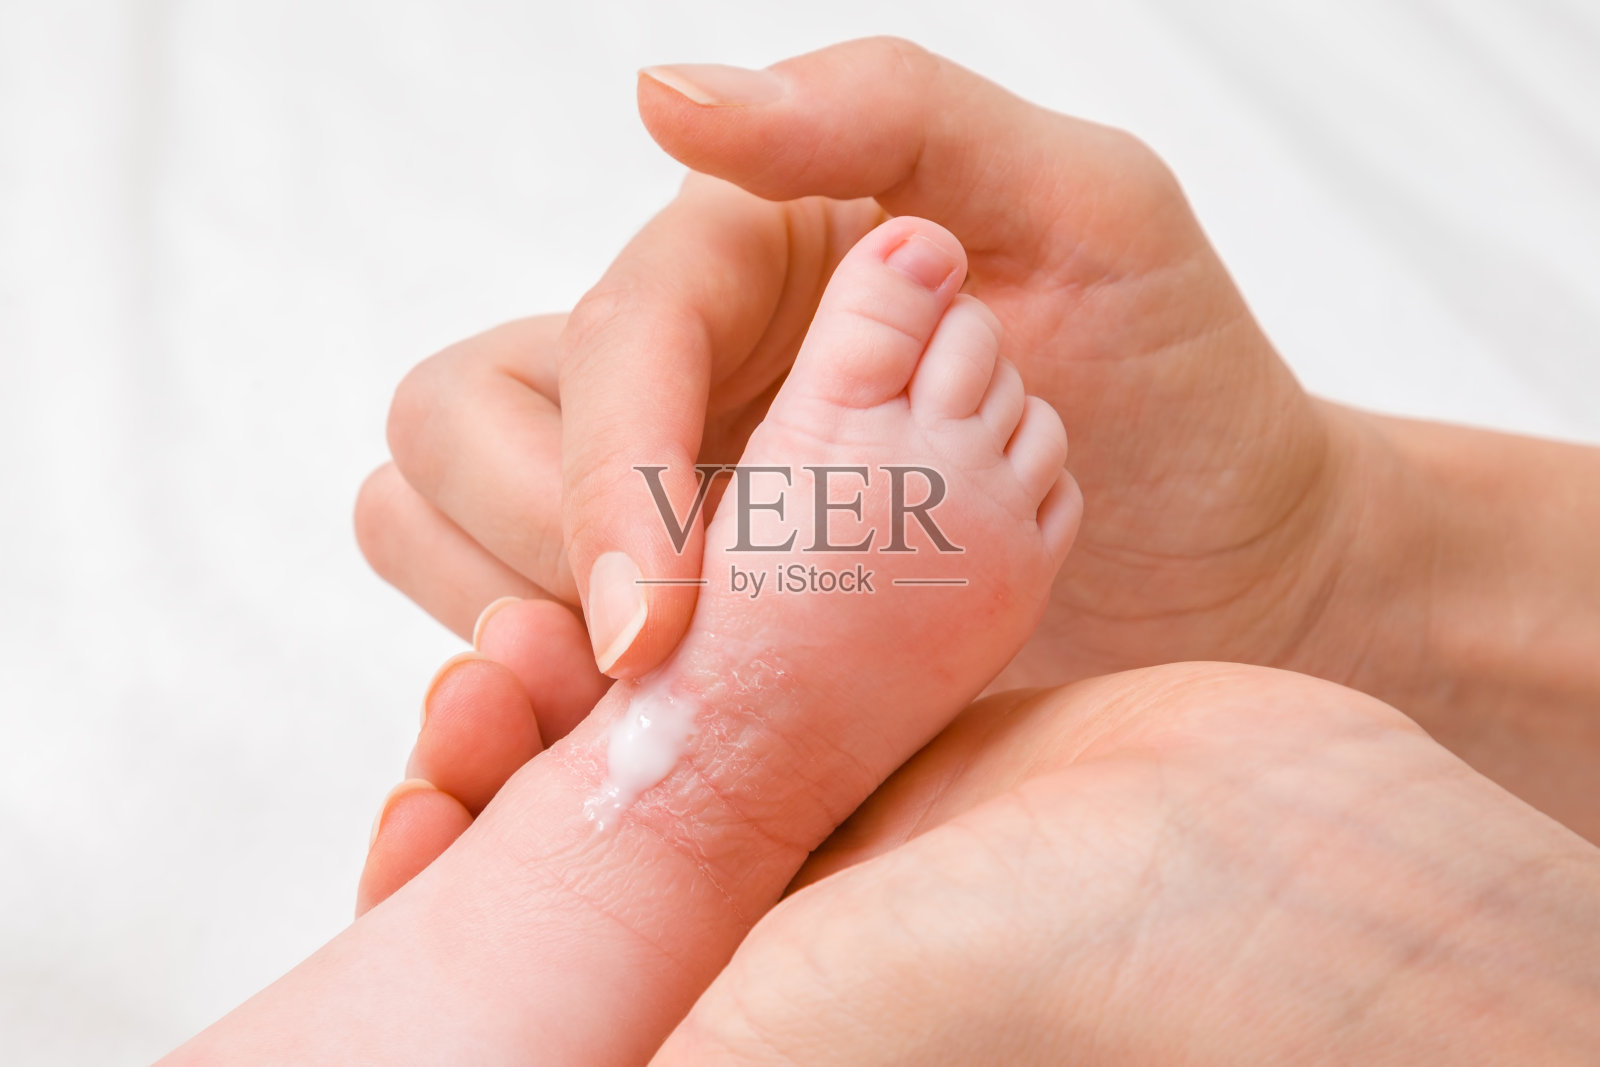 女人手牵着婴儿的腿。母亲仔细地涂抹药膏。因奶粉或其他食物导致皮肤发红干燥。关心宝宝的身体。特写镜头。照片摄影图片